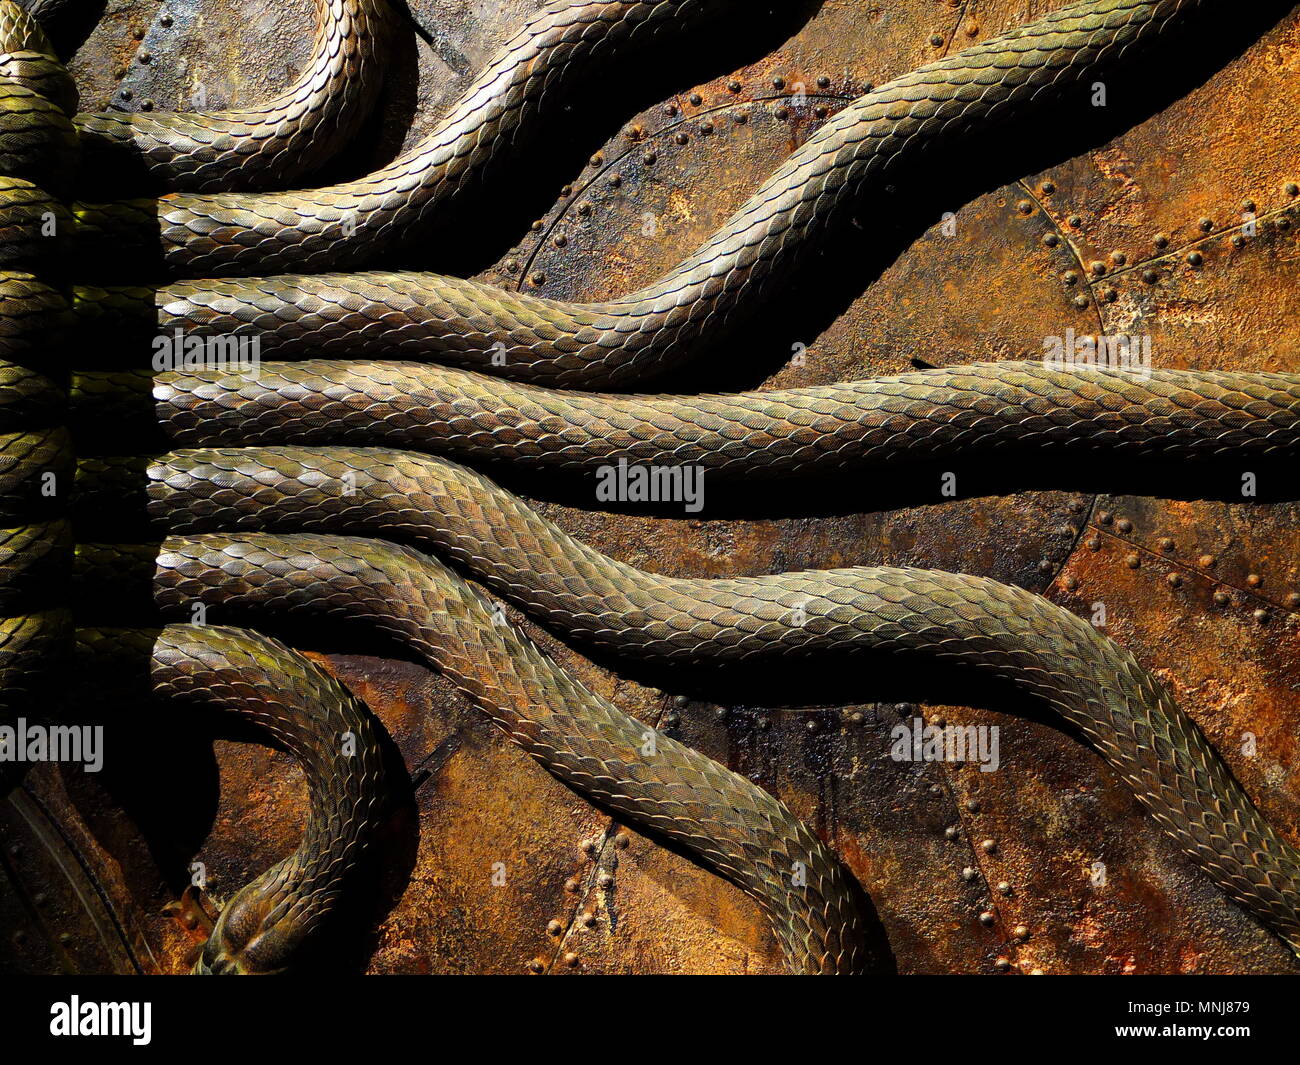 Dettaglio del serpente porta da Harry Potter camera dei segreti, Warner Bros Studios, Leavesdon, REGNO UNITO Foto Stock